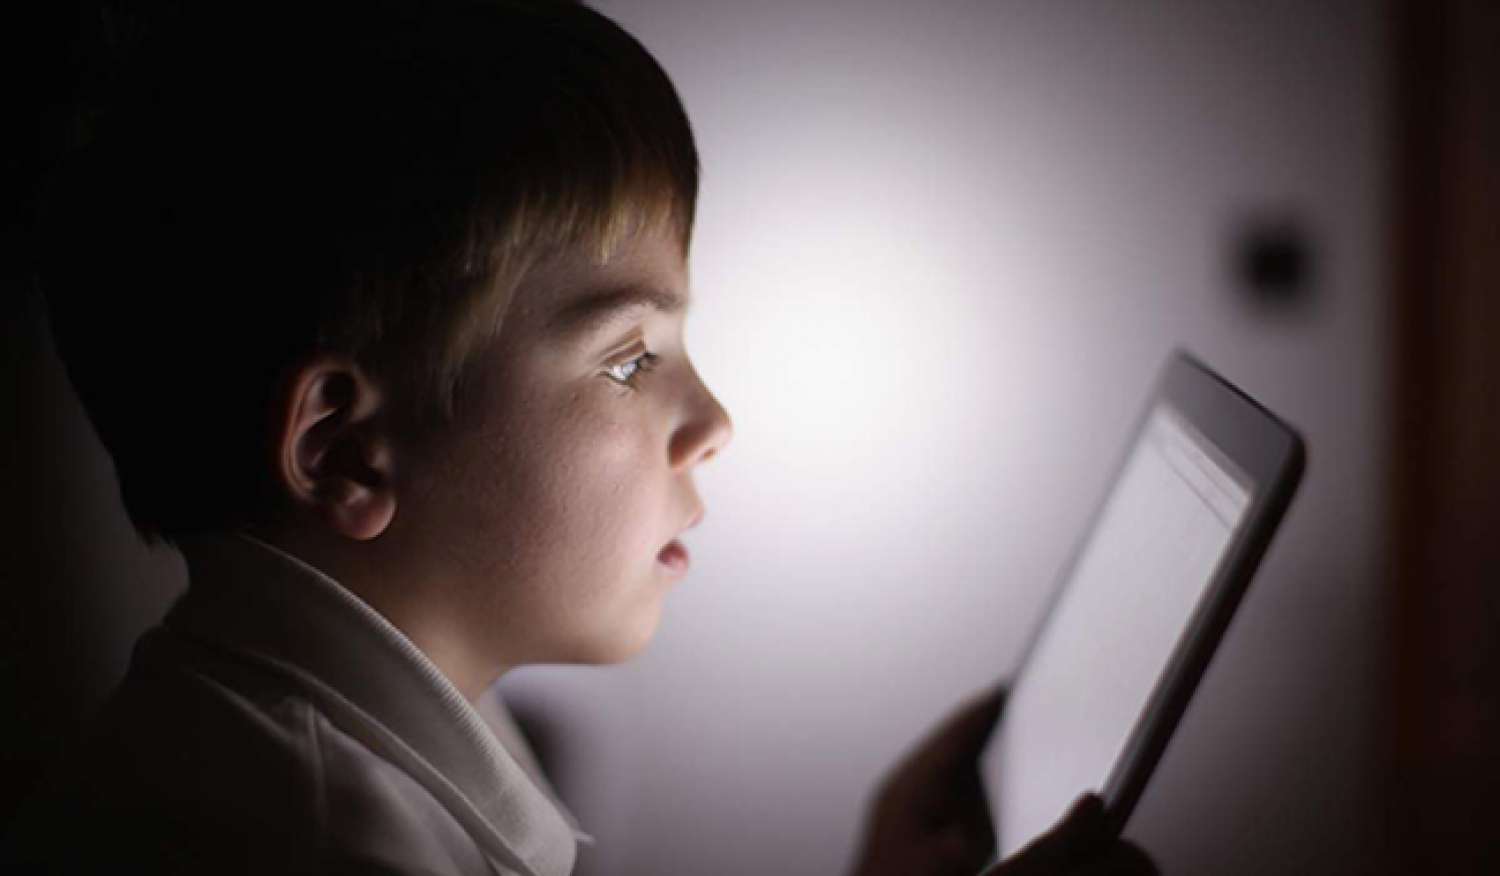 تعرف على المسافة «الآمنة» بين عين الطفل والشاشات الإلكترونية